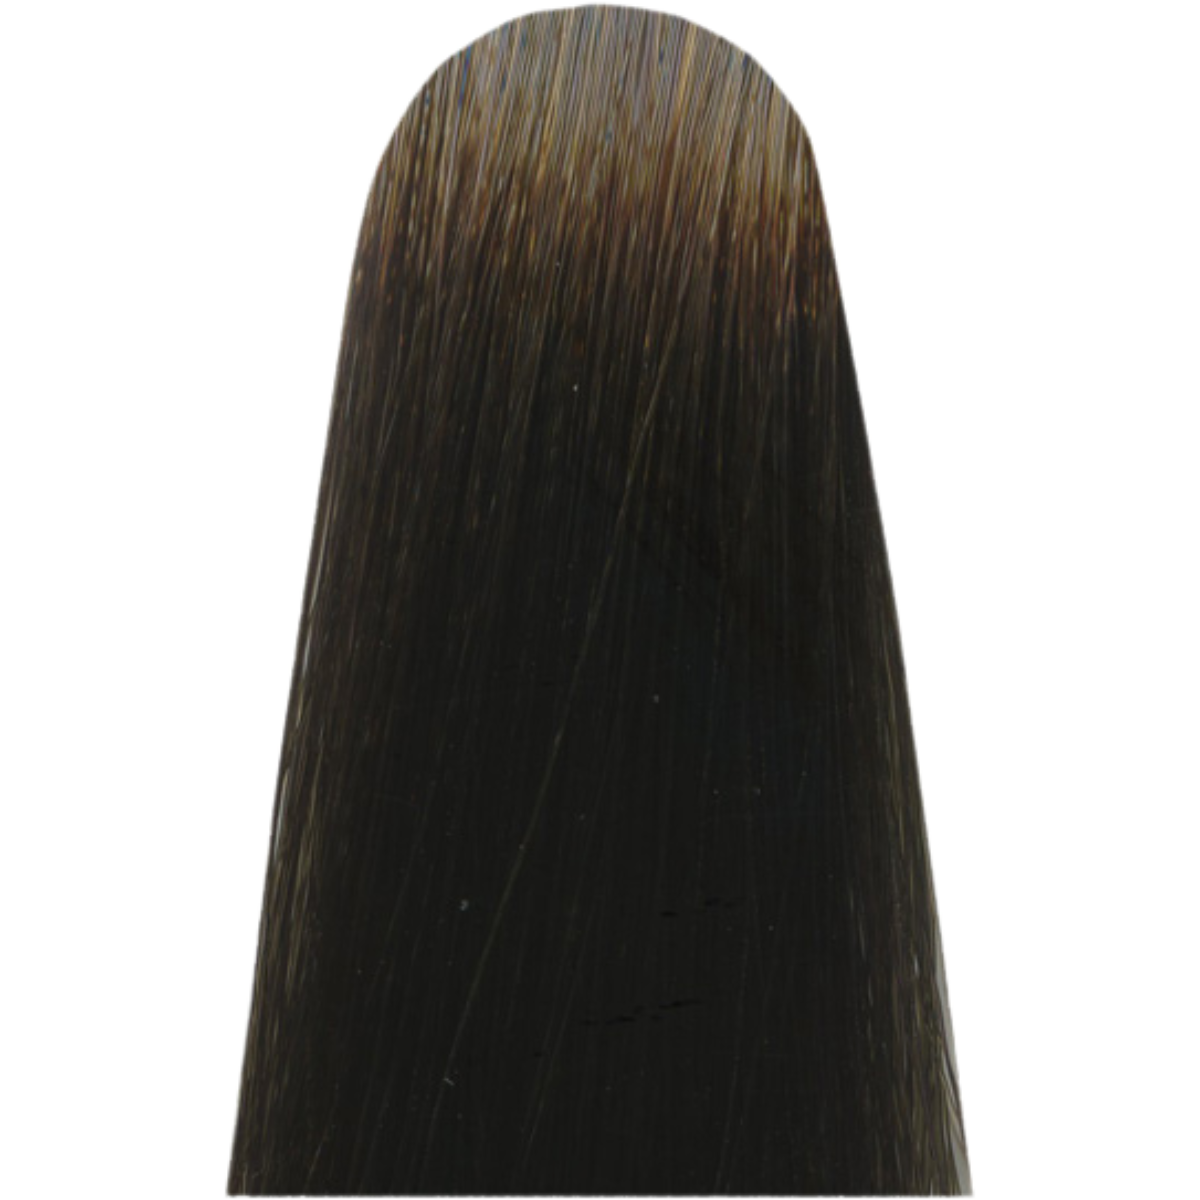 צבע שיער CC 6.17 DARK ASH METALIC BLONDE מג`ירל MAJIREL COOL COVER צבע לשיער לוריאל 50 גרם